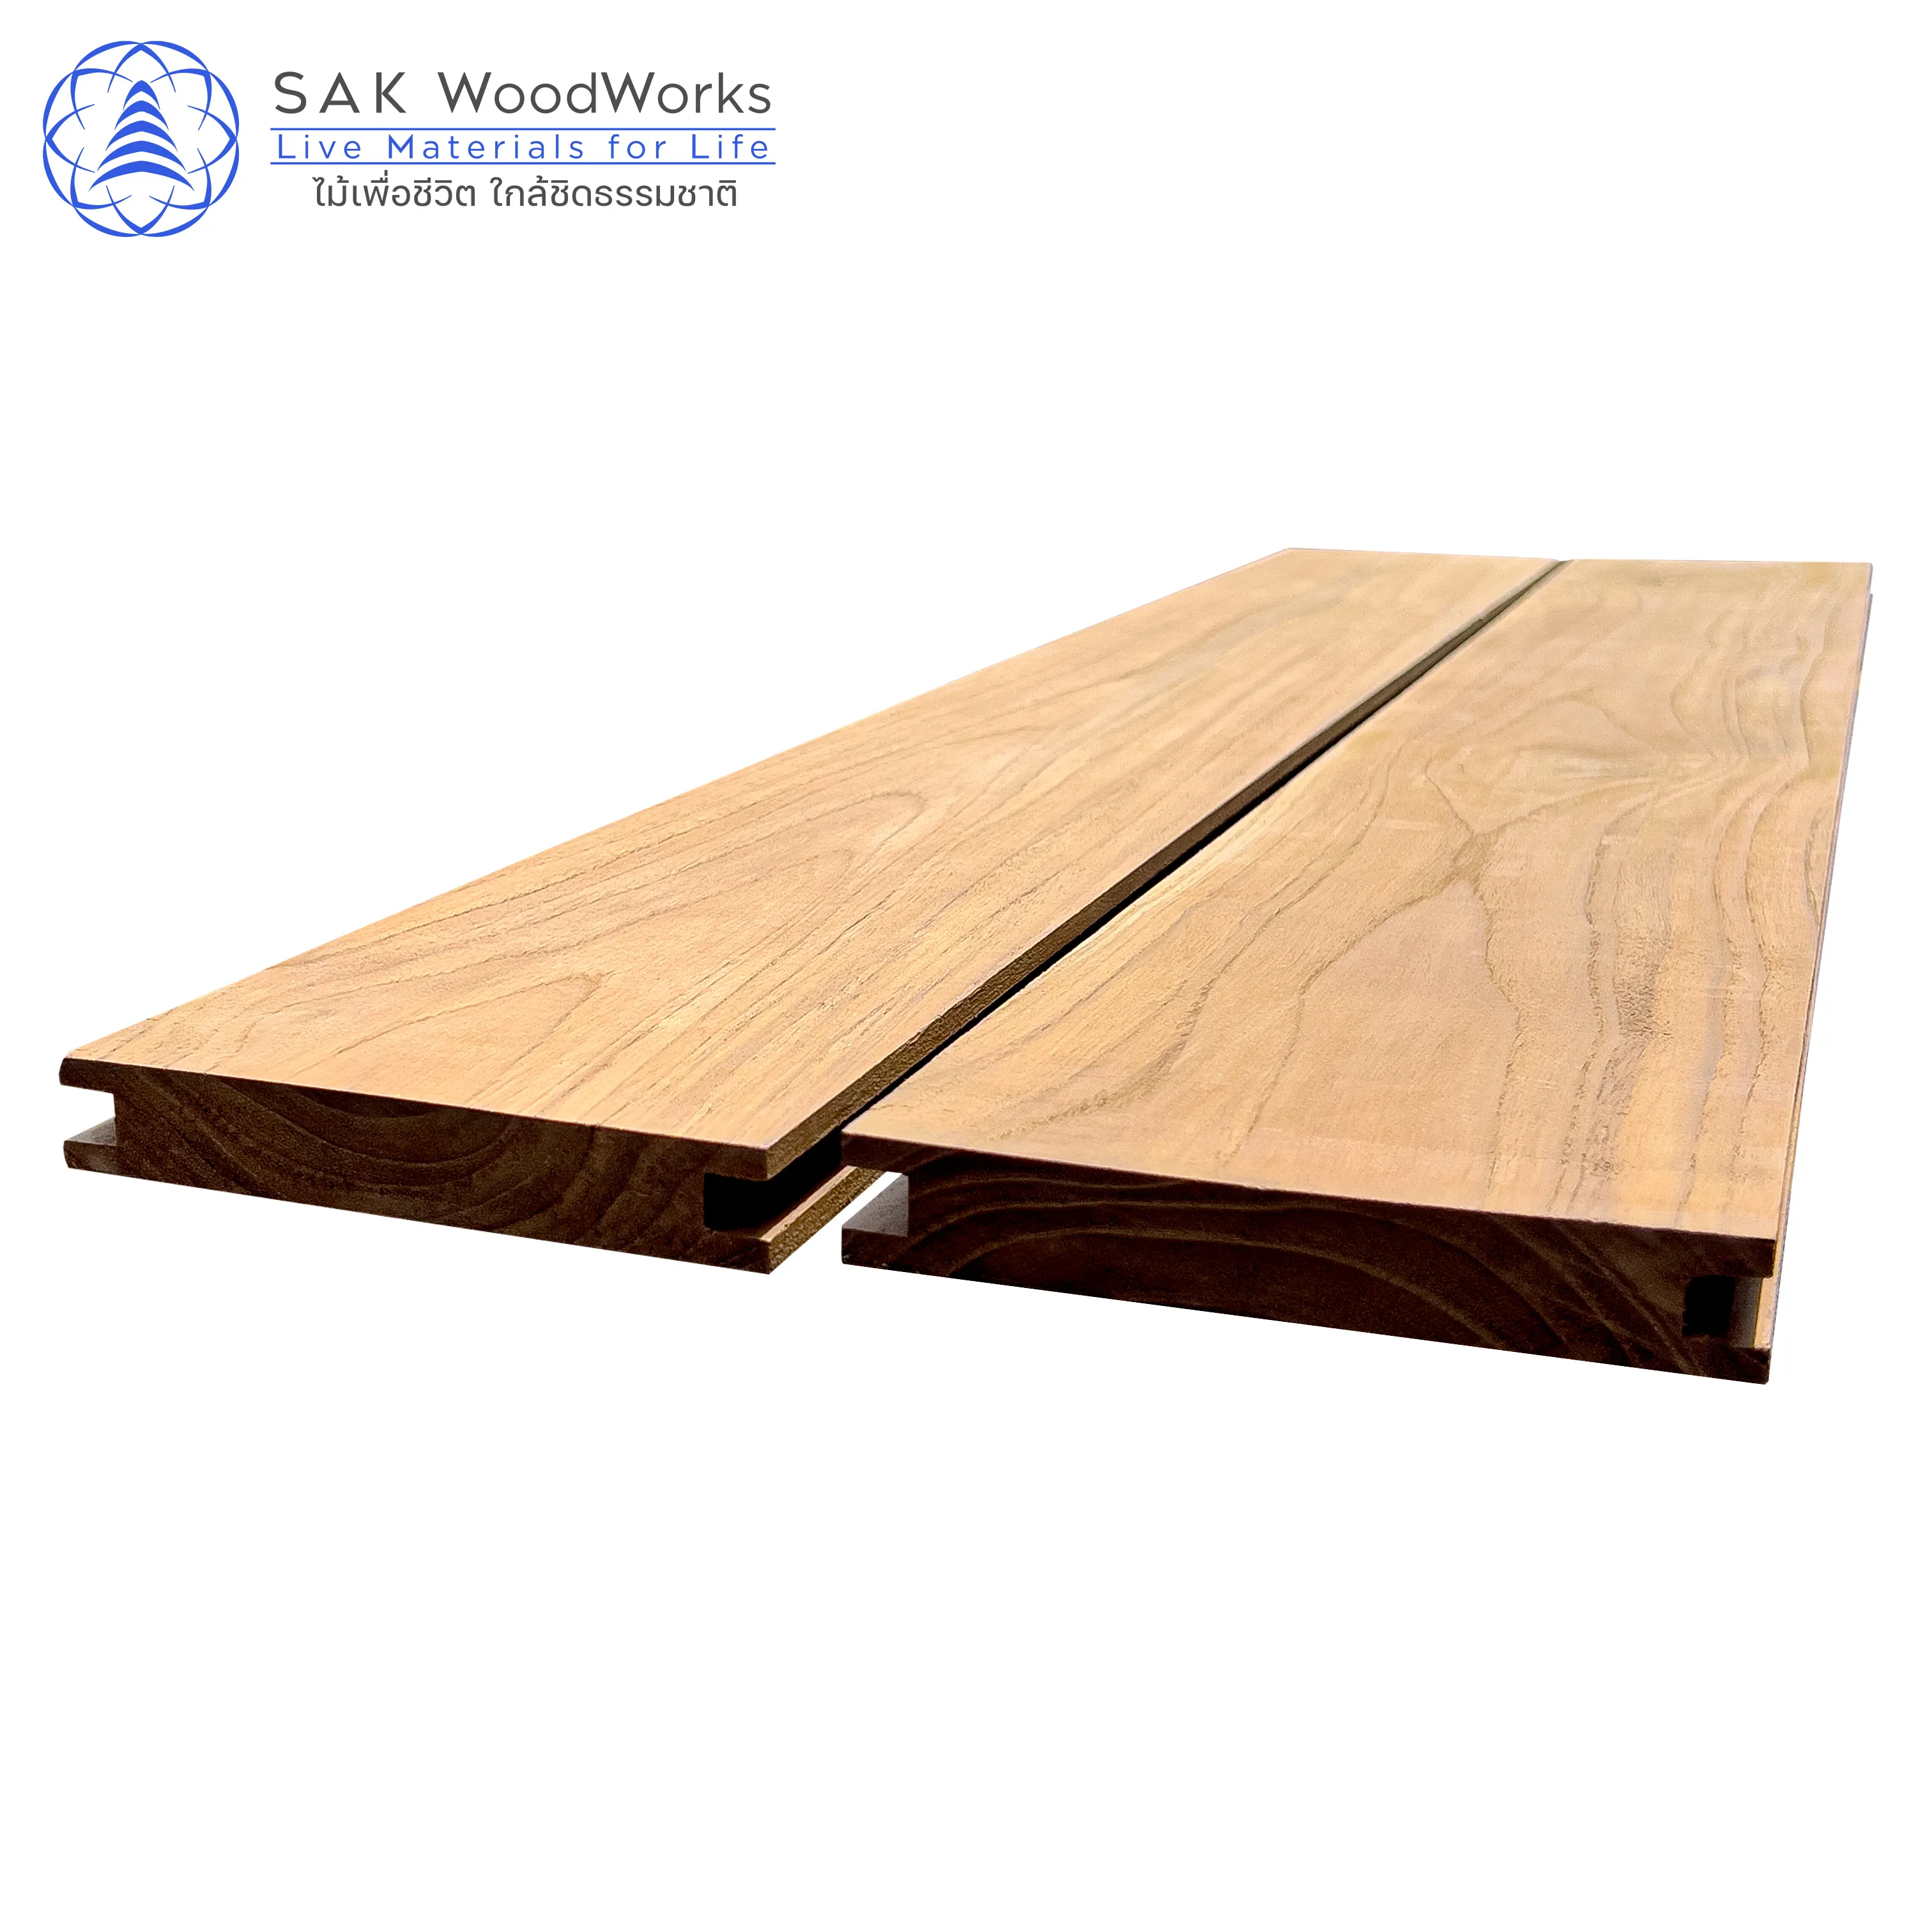 Thaise Teakhouten Planken | 22X140 Mm. X 1-2 M. | Door Sak Houtbewerking Goudbruine Kleur Effen Planken Voor Buitenoplossing